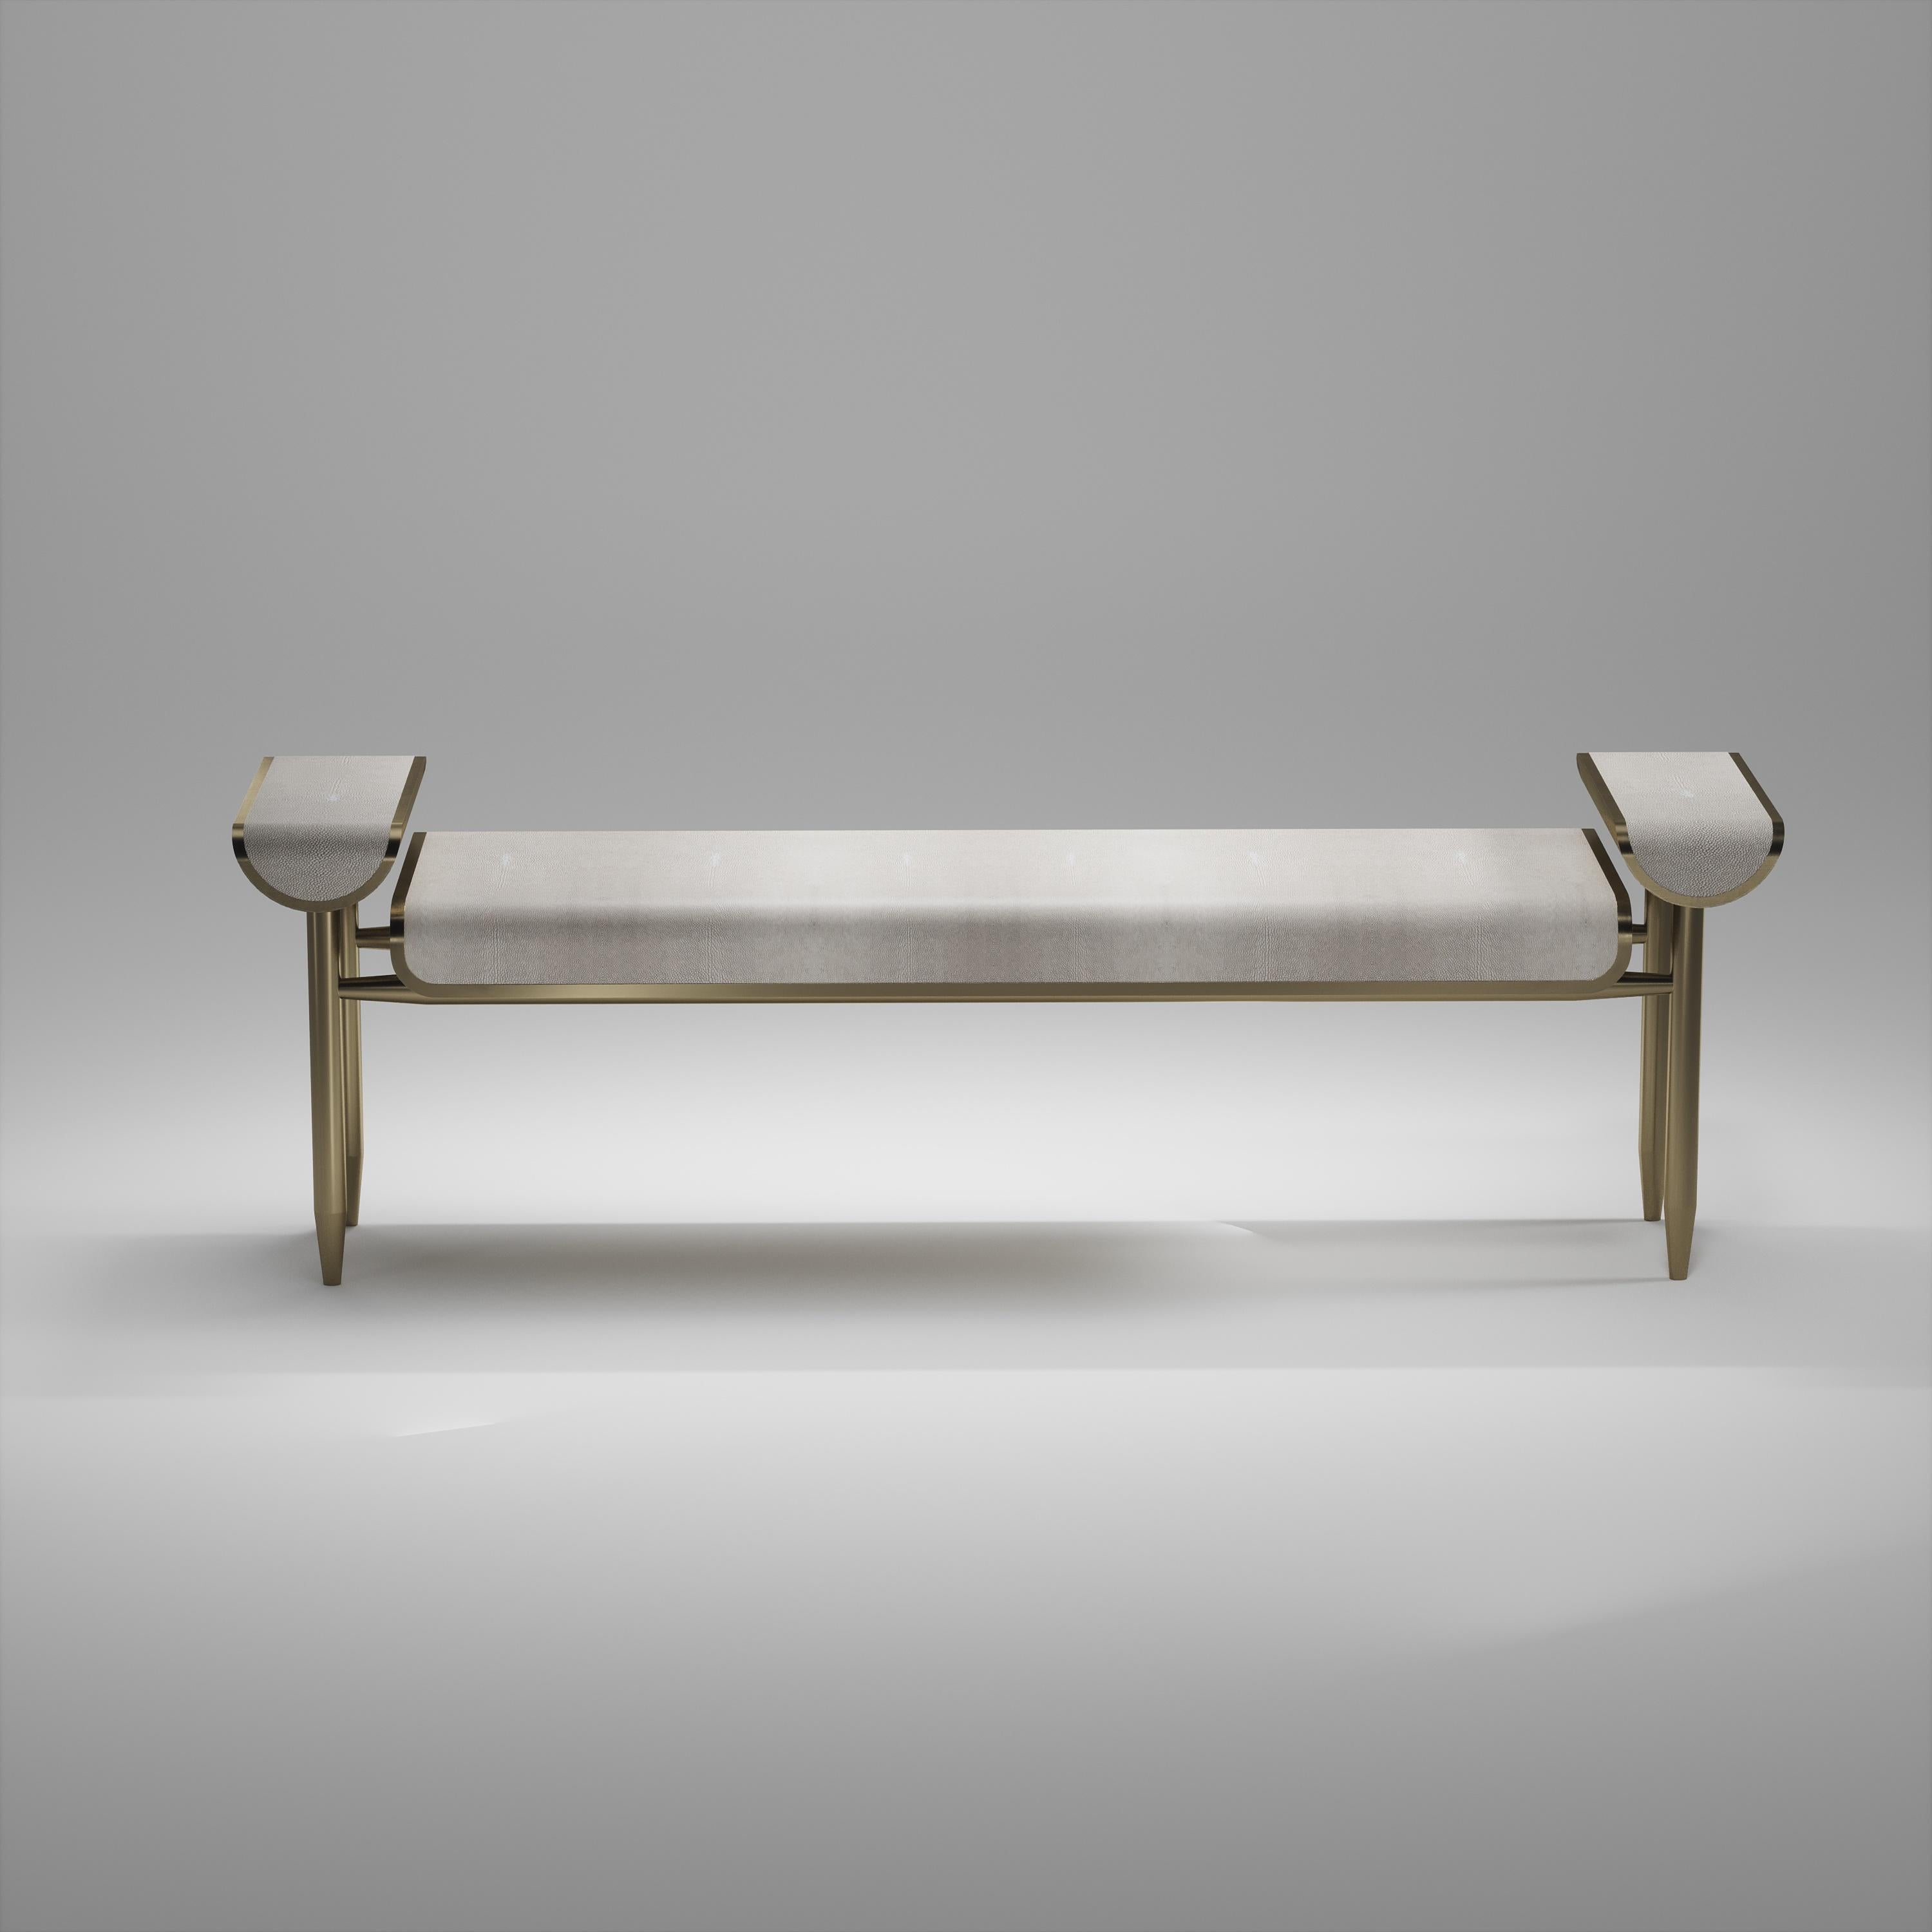 Inspiriert von der originalen Dandy-Bank von Kifu Paris (siehe Bilder am Ende des Dias), ist die Dandy II Tabletop Bench die ultimative Luxus-Sitzgelegenheit. Die Sitzfläche ist mit cremefarbenem Chagrin eingelegt, und der Rahmen, die Beine und die